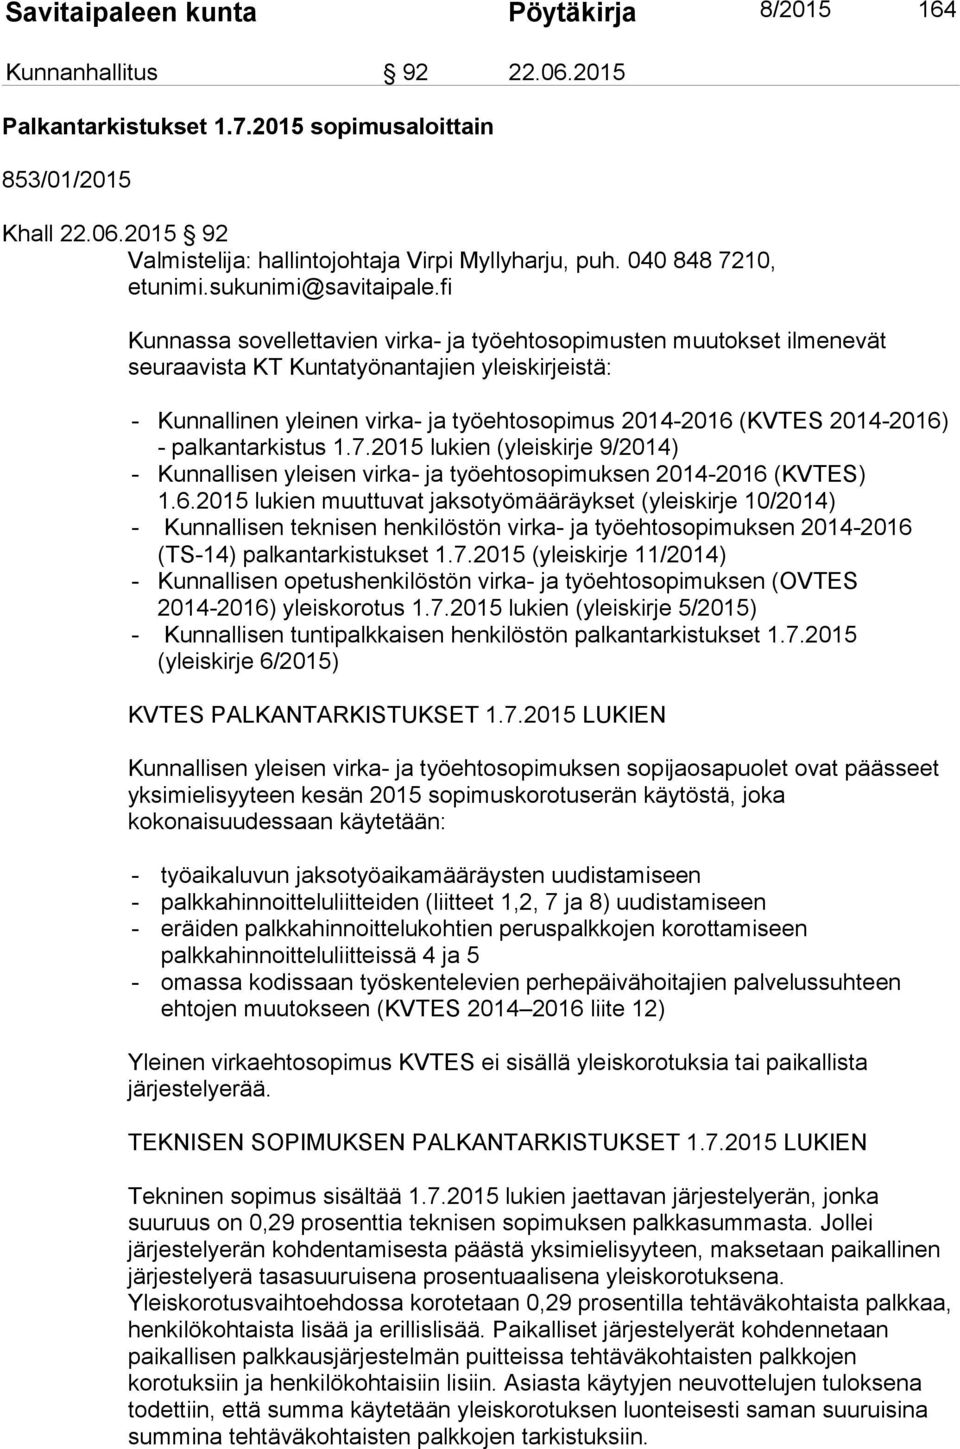 2014-2016) - palkantarkistus 1.7.2015 lukien (yleiskirje 9/2014) - Kunnallisen yleisen virka- ja työehtosopimuksen 2014-2016 (KVTES) 1.6.2015 lukien muuttuvat jaksotyömääräykset (yleiskirje 10/2014) - Kunnallisen teknisen henkilöstön virka- ja työehtosopimuksen 2014-2016 (TS-14) palkantarkistukset 1.